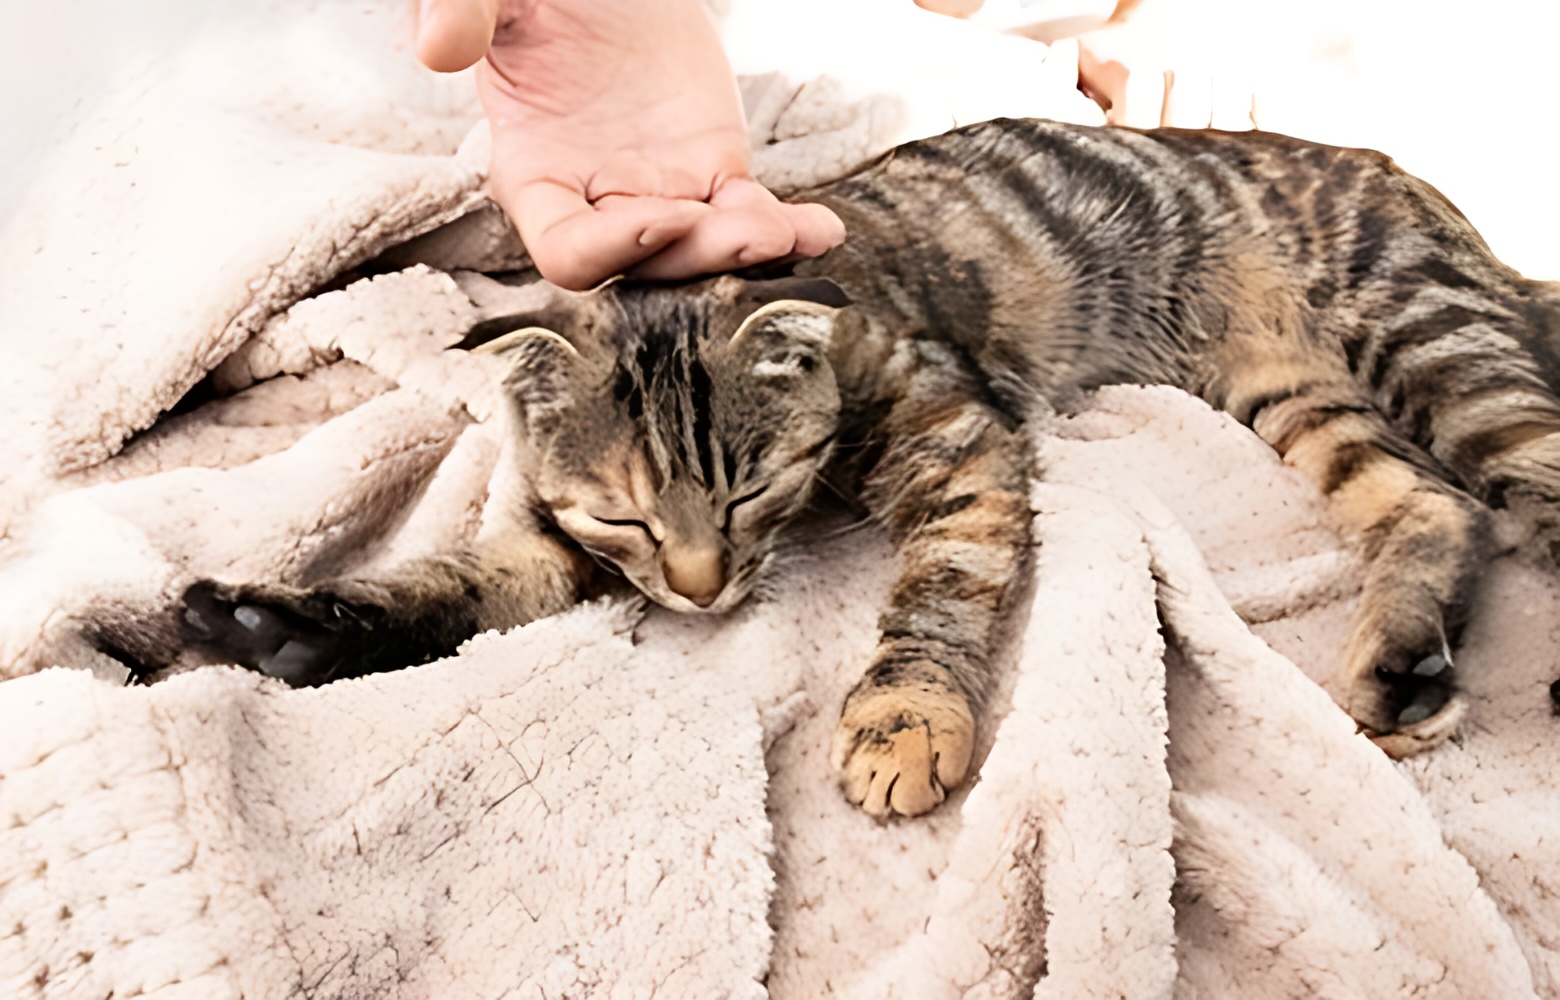 التهاب المفاصل عند القطط: الأعراض طرق التحكم بالألم ونصائح للممارسة الرياضة